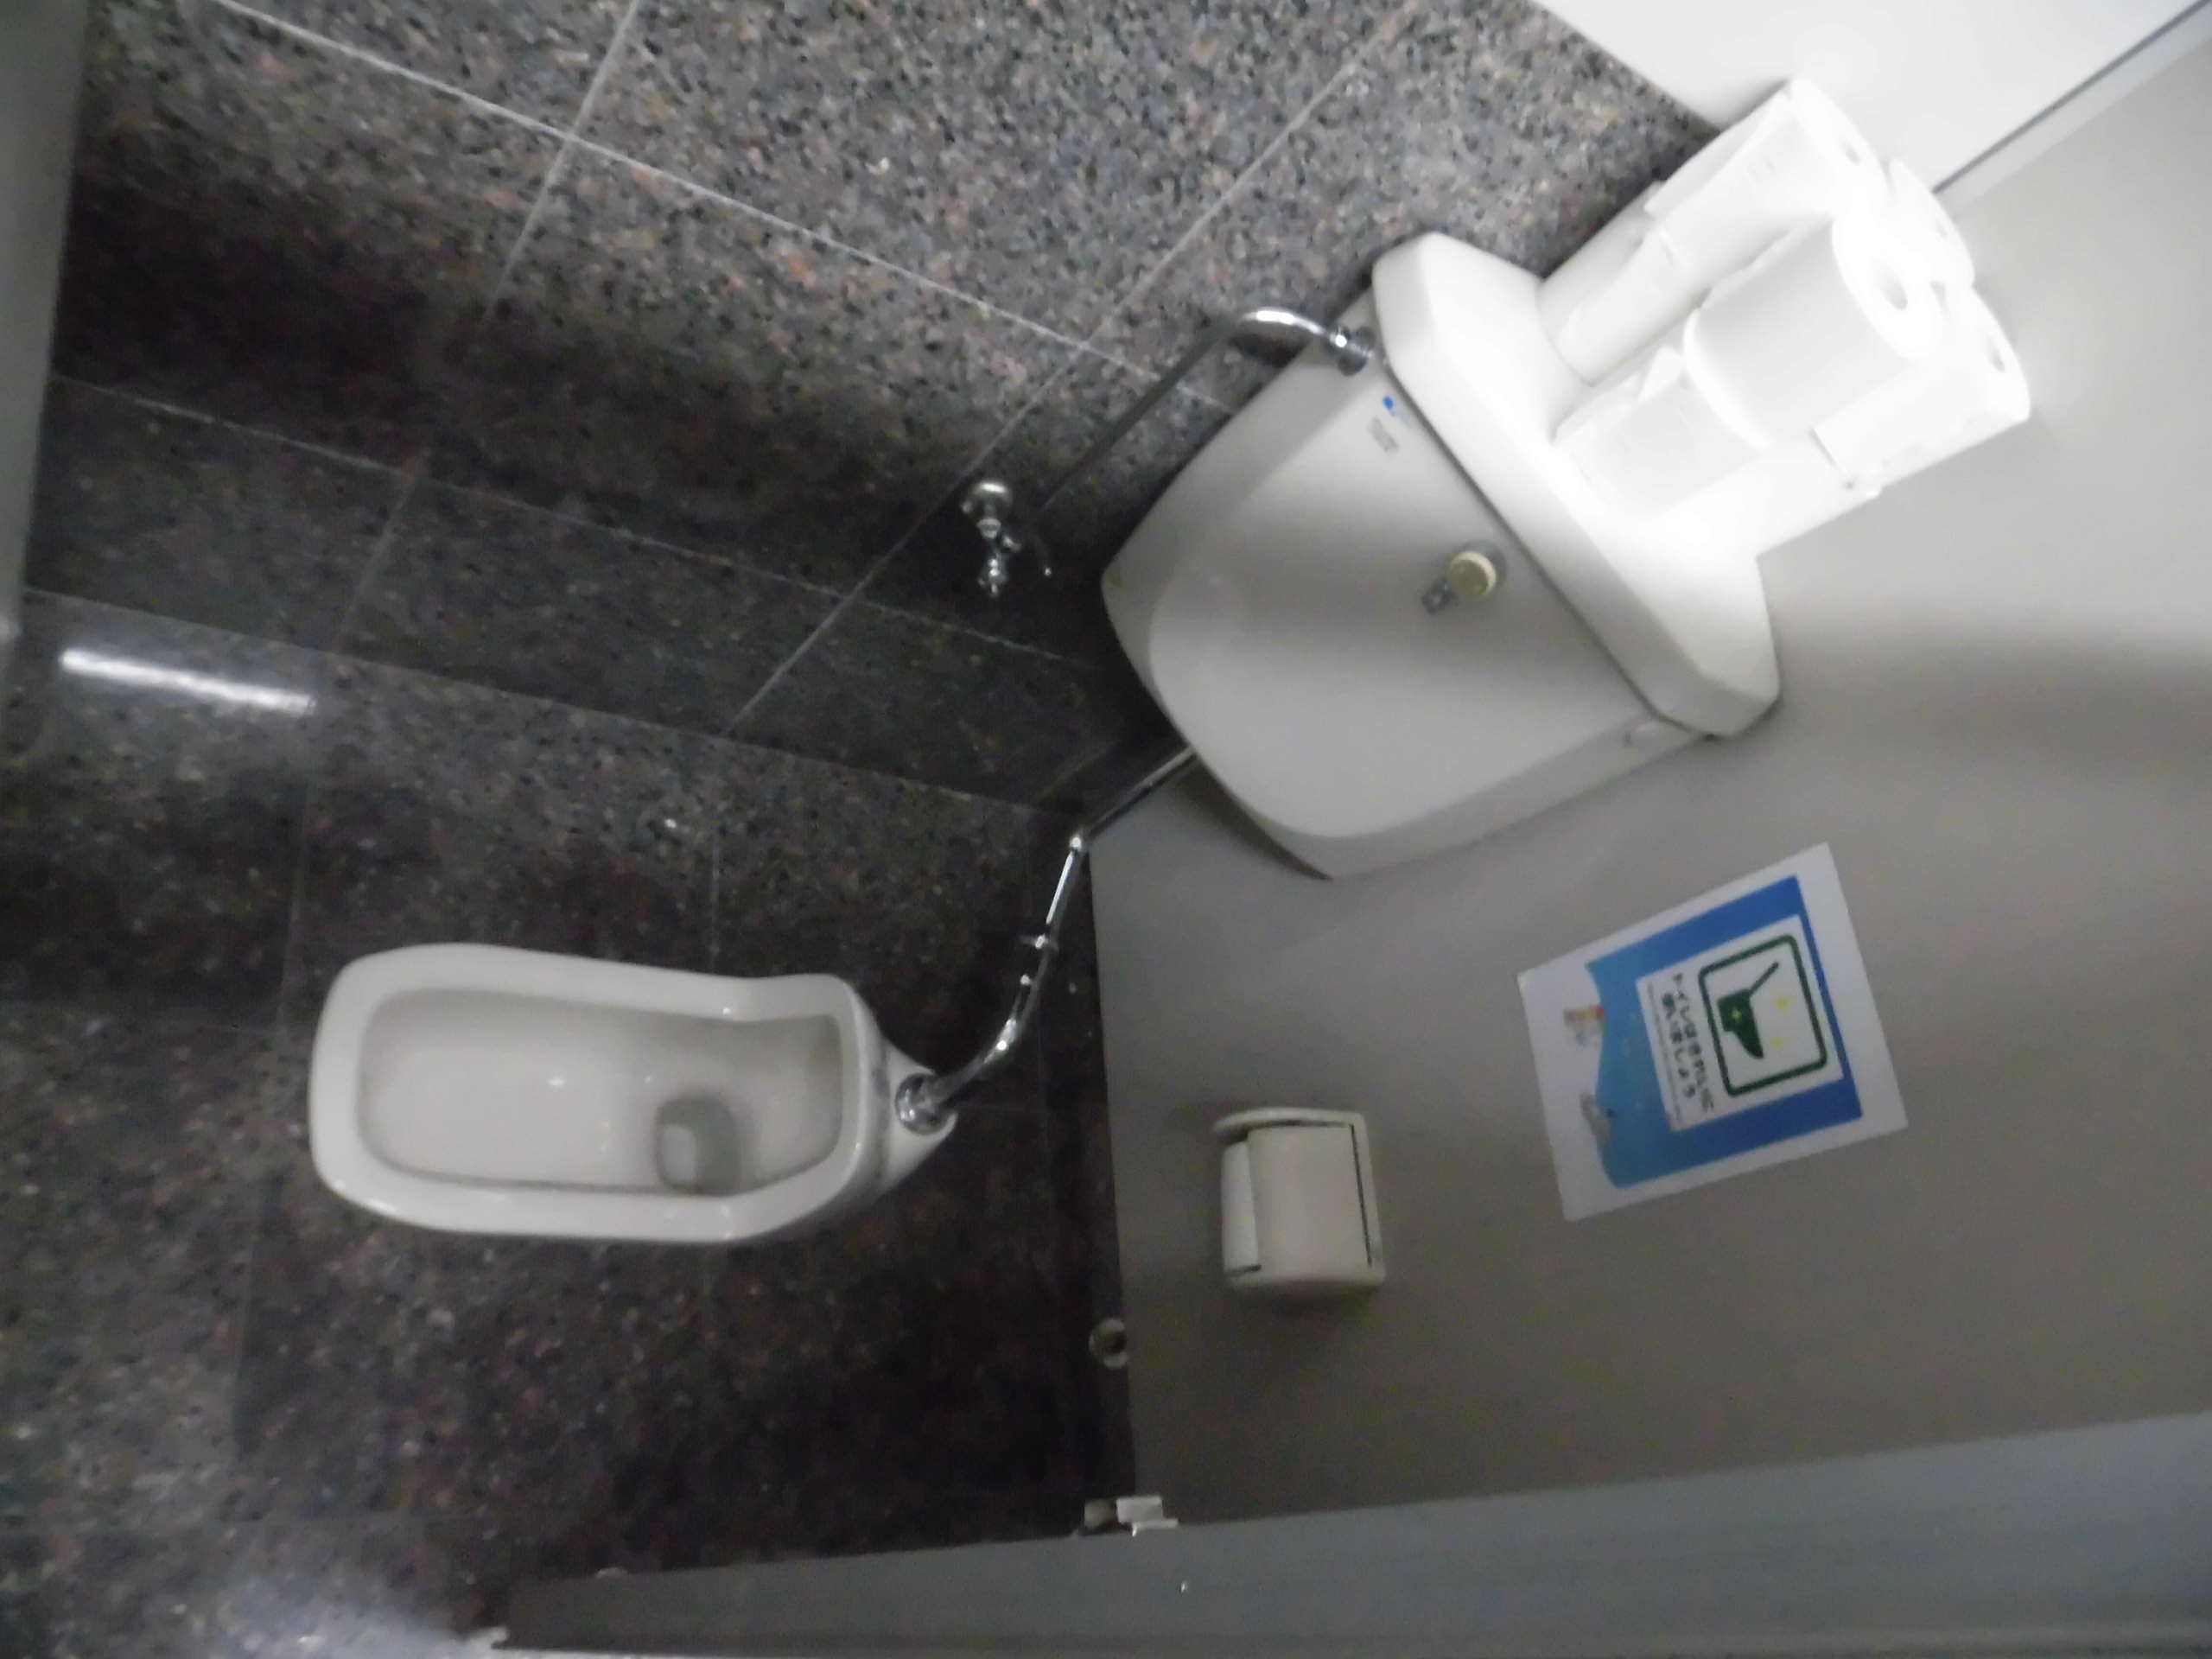 トイレ改修しました！(中津川) 五十嵐工業株式会社 求人情報、中津川市、恵那市、建設業界で働くなら五十嵐工業